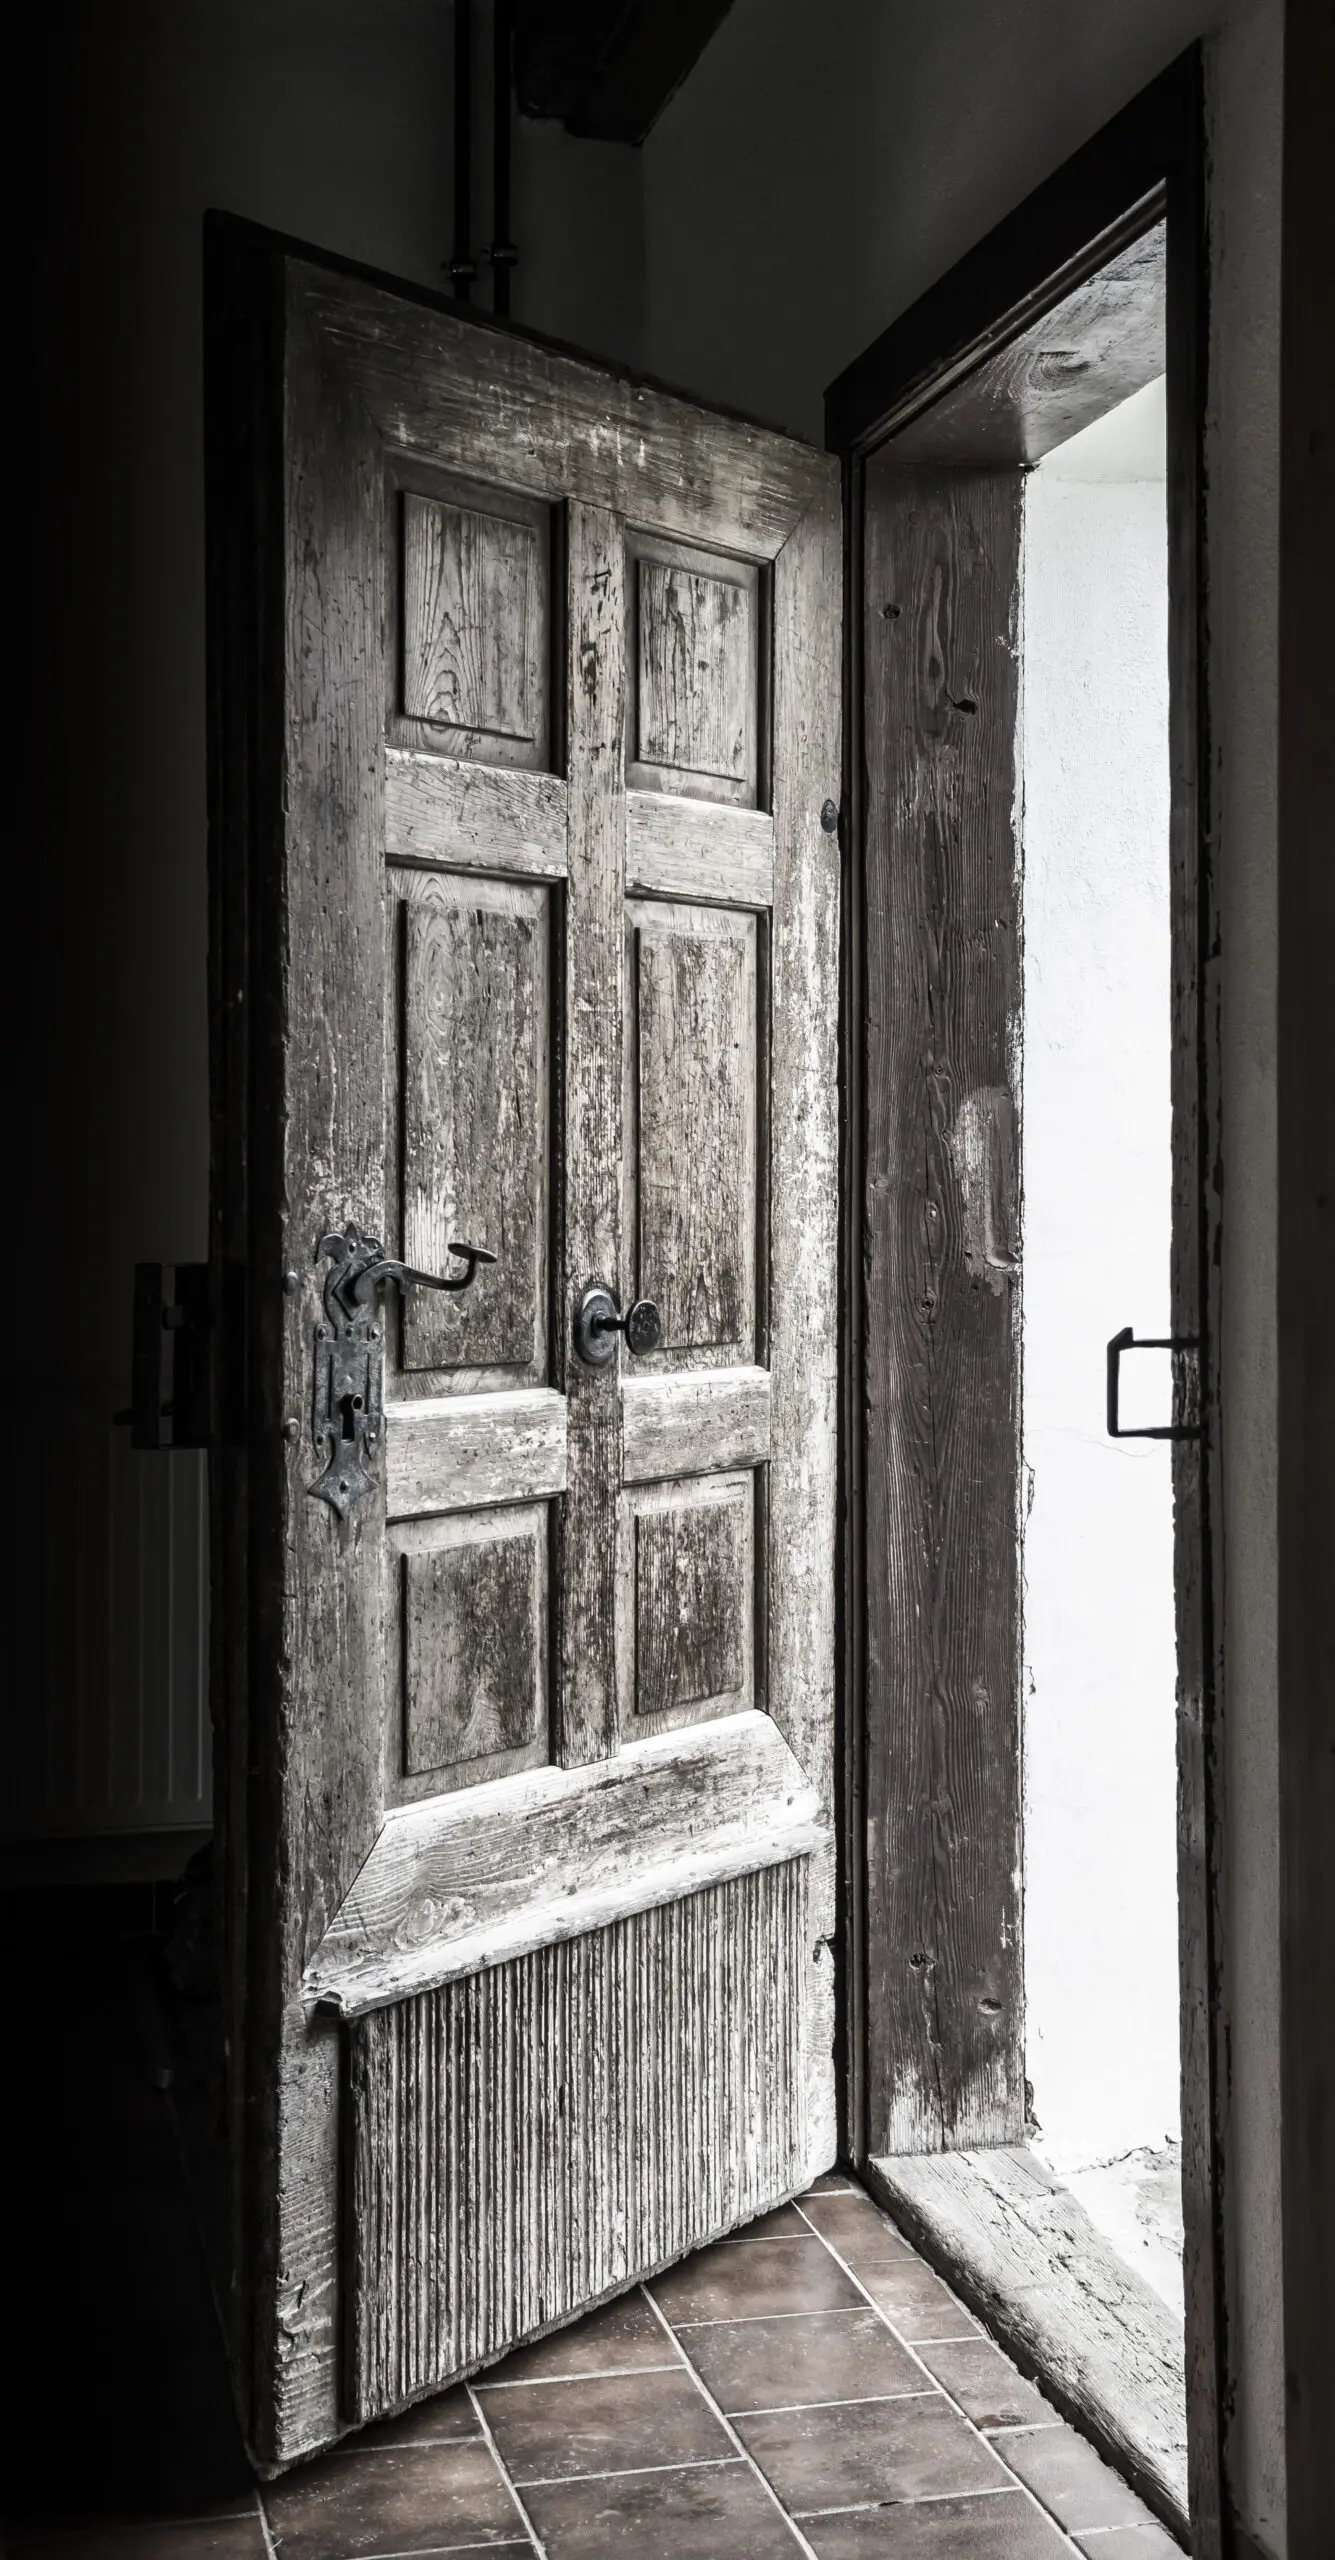 Wandbild (3228) The Doors präsentiert: Stillleben,Kreatives,Architektur,Detailaufnahmen,Sonstige Architektur,Sonstige Stillleben